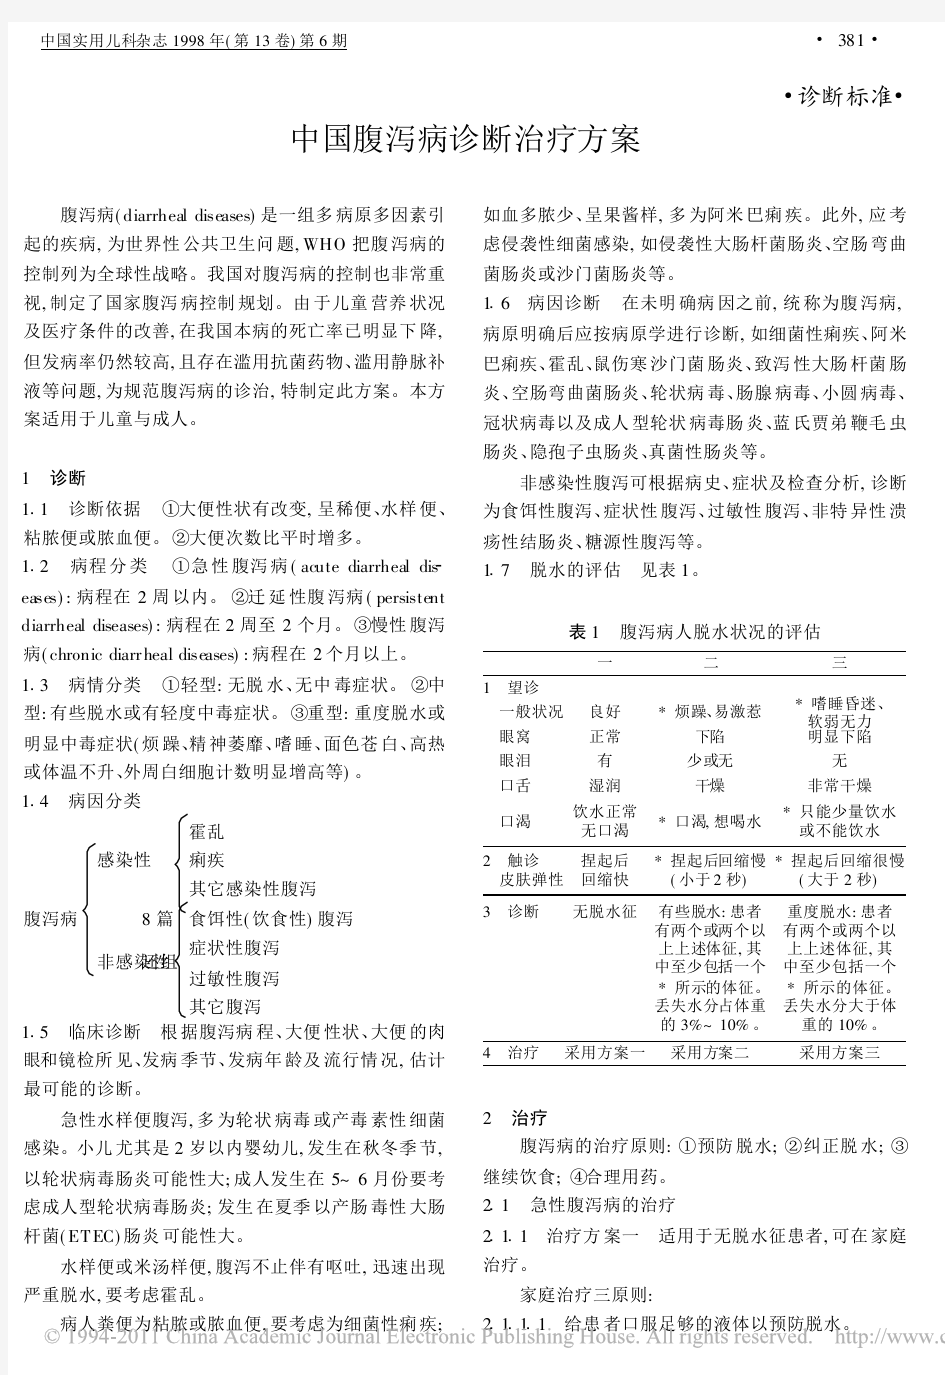 中国腹泻病诊断治疗方案